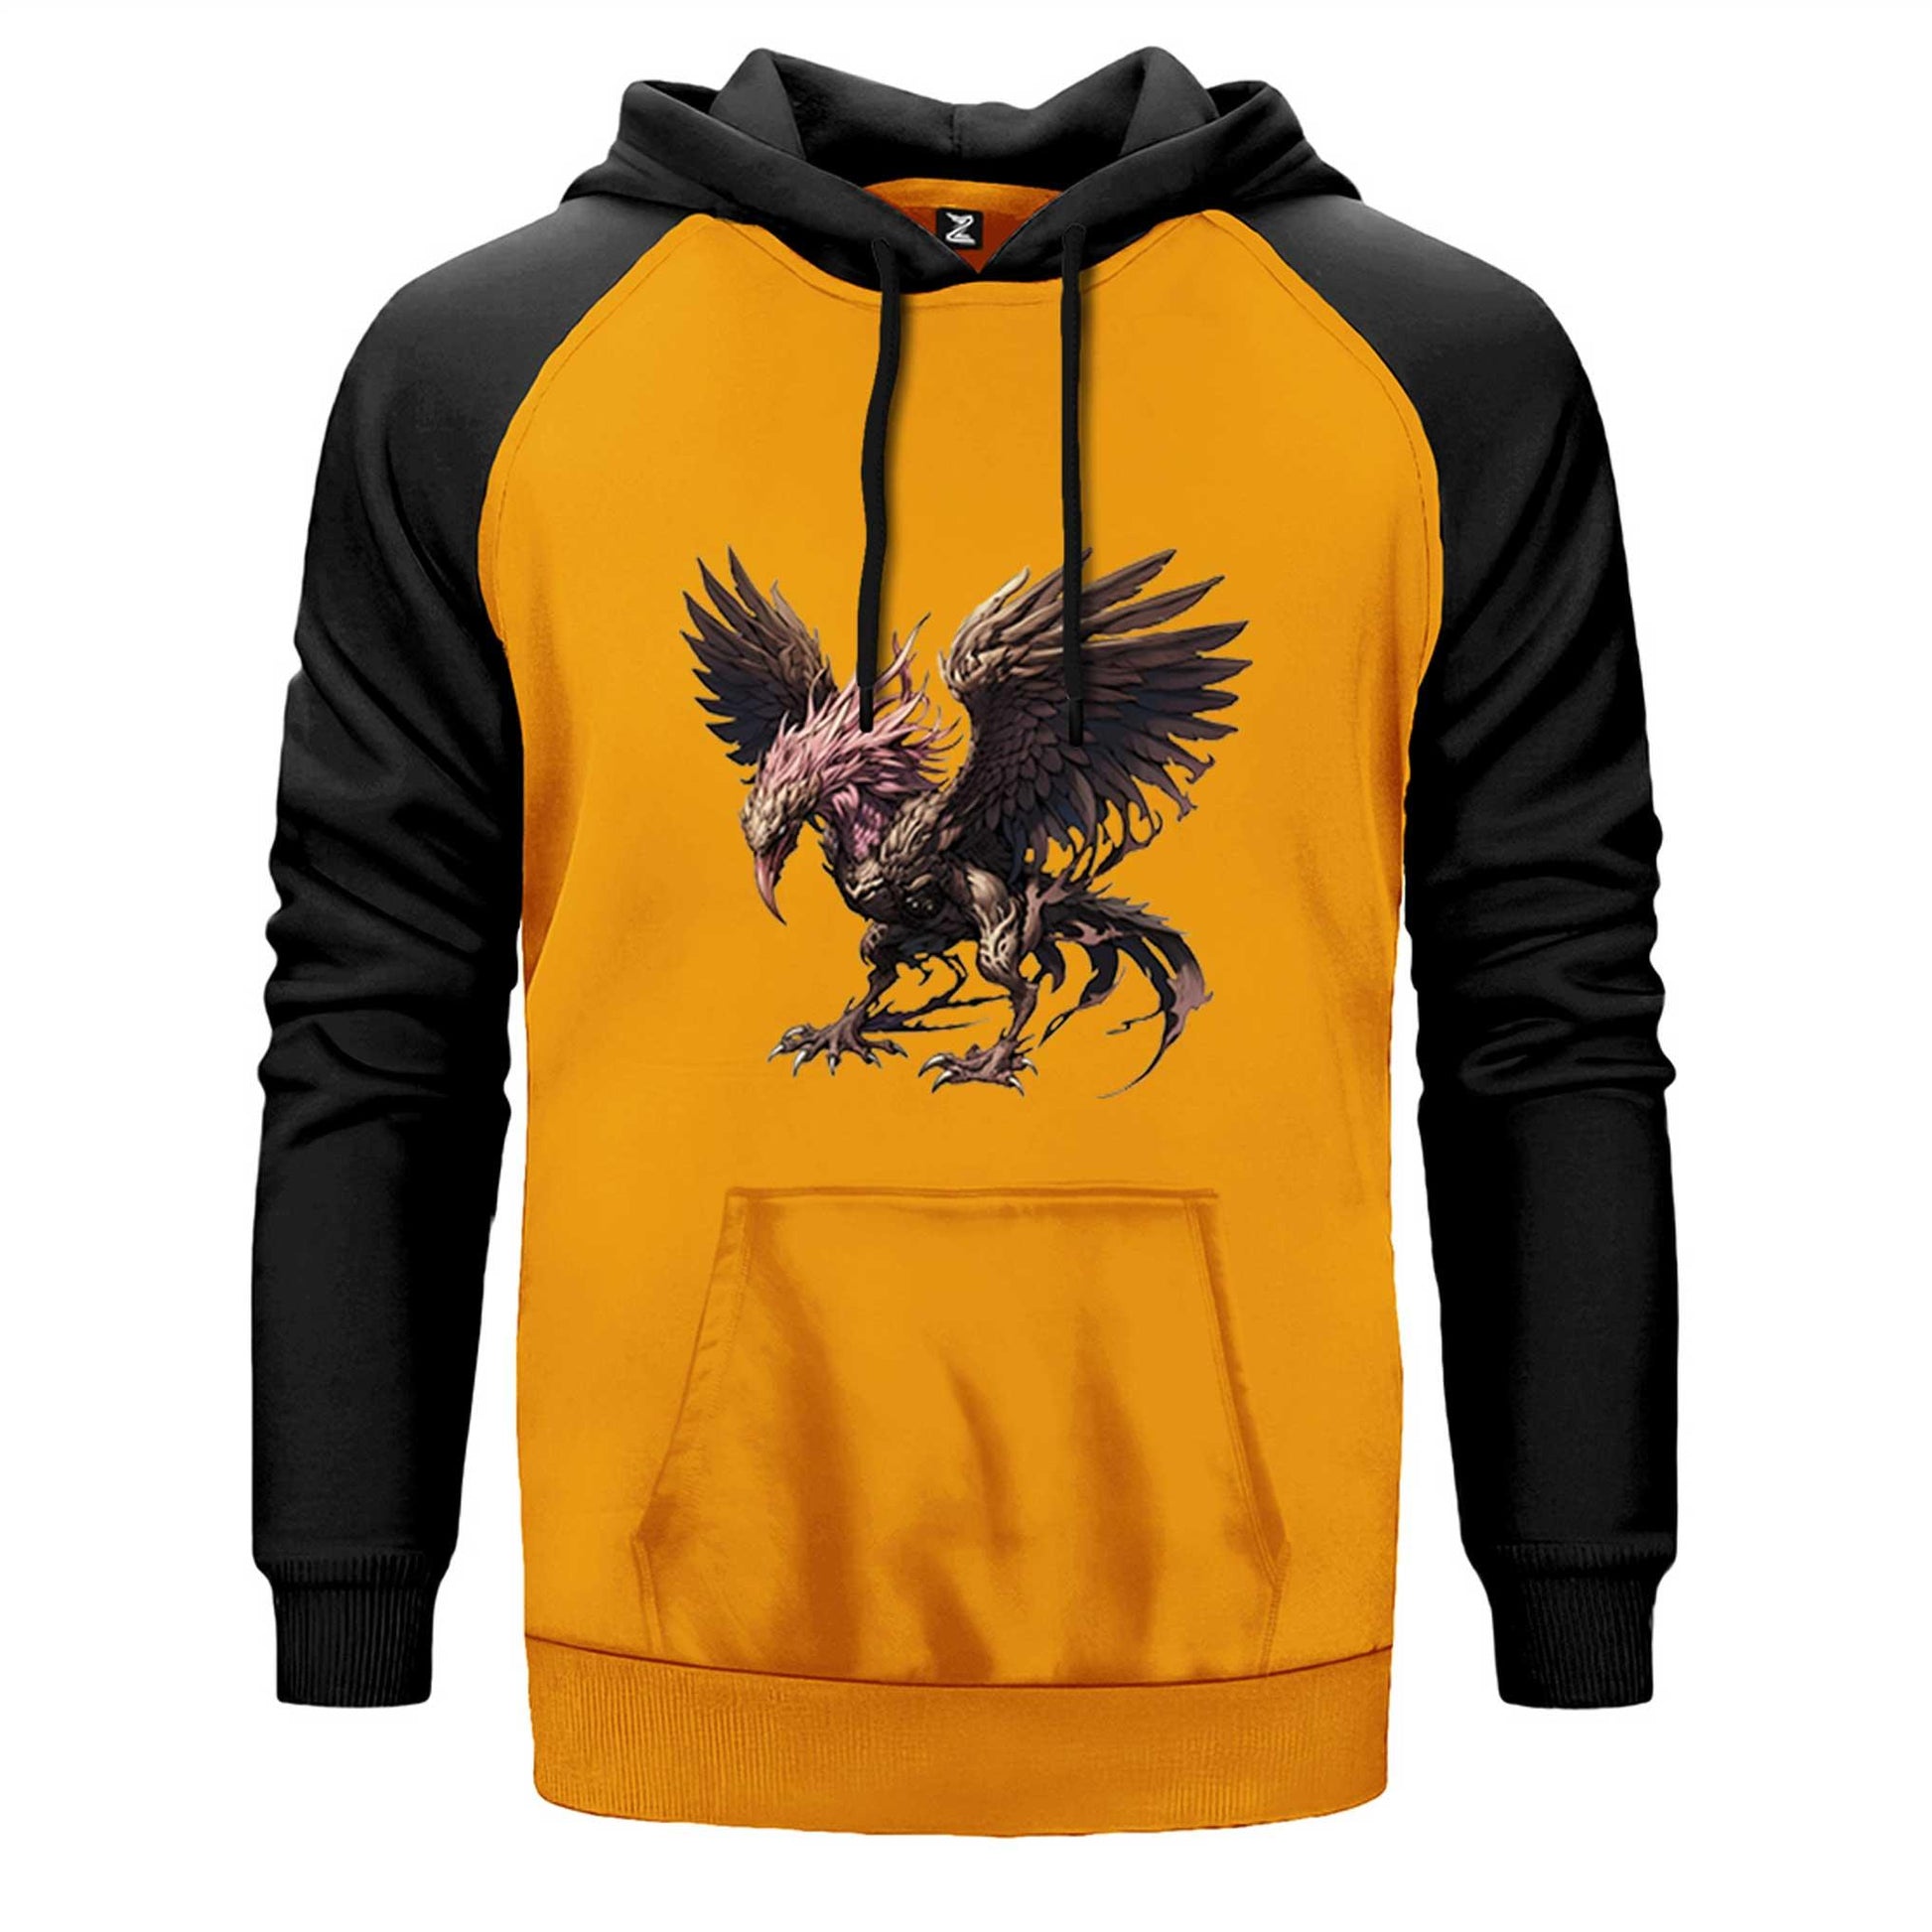 Phoenix Mythology Creature Çift Renk Reglan Kol Sweatshirt - Zepplingiyim